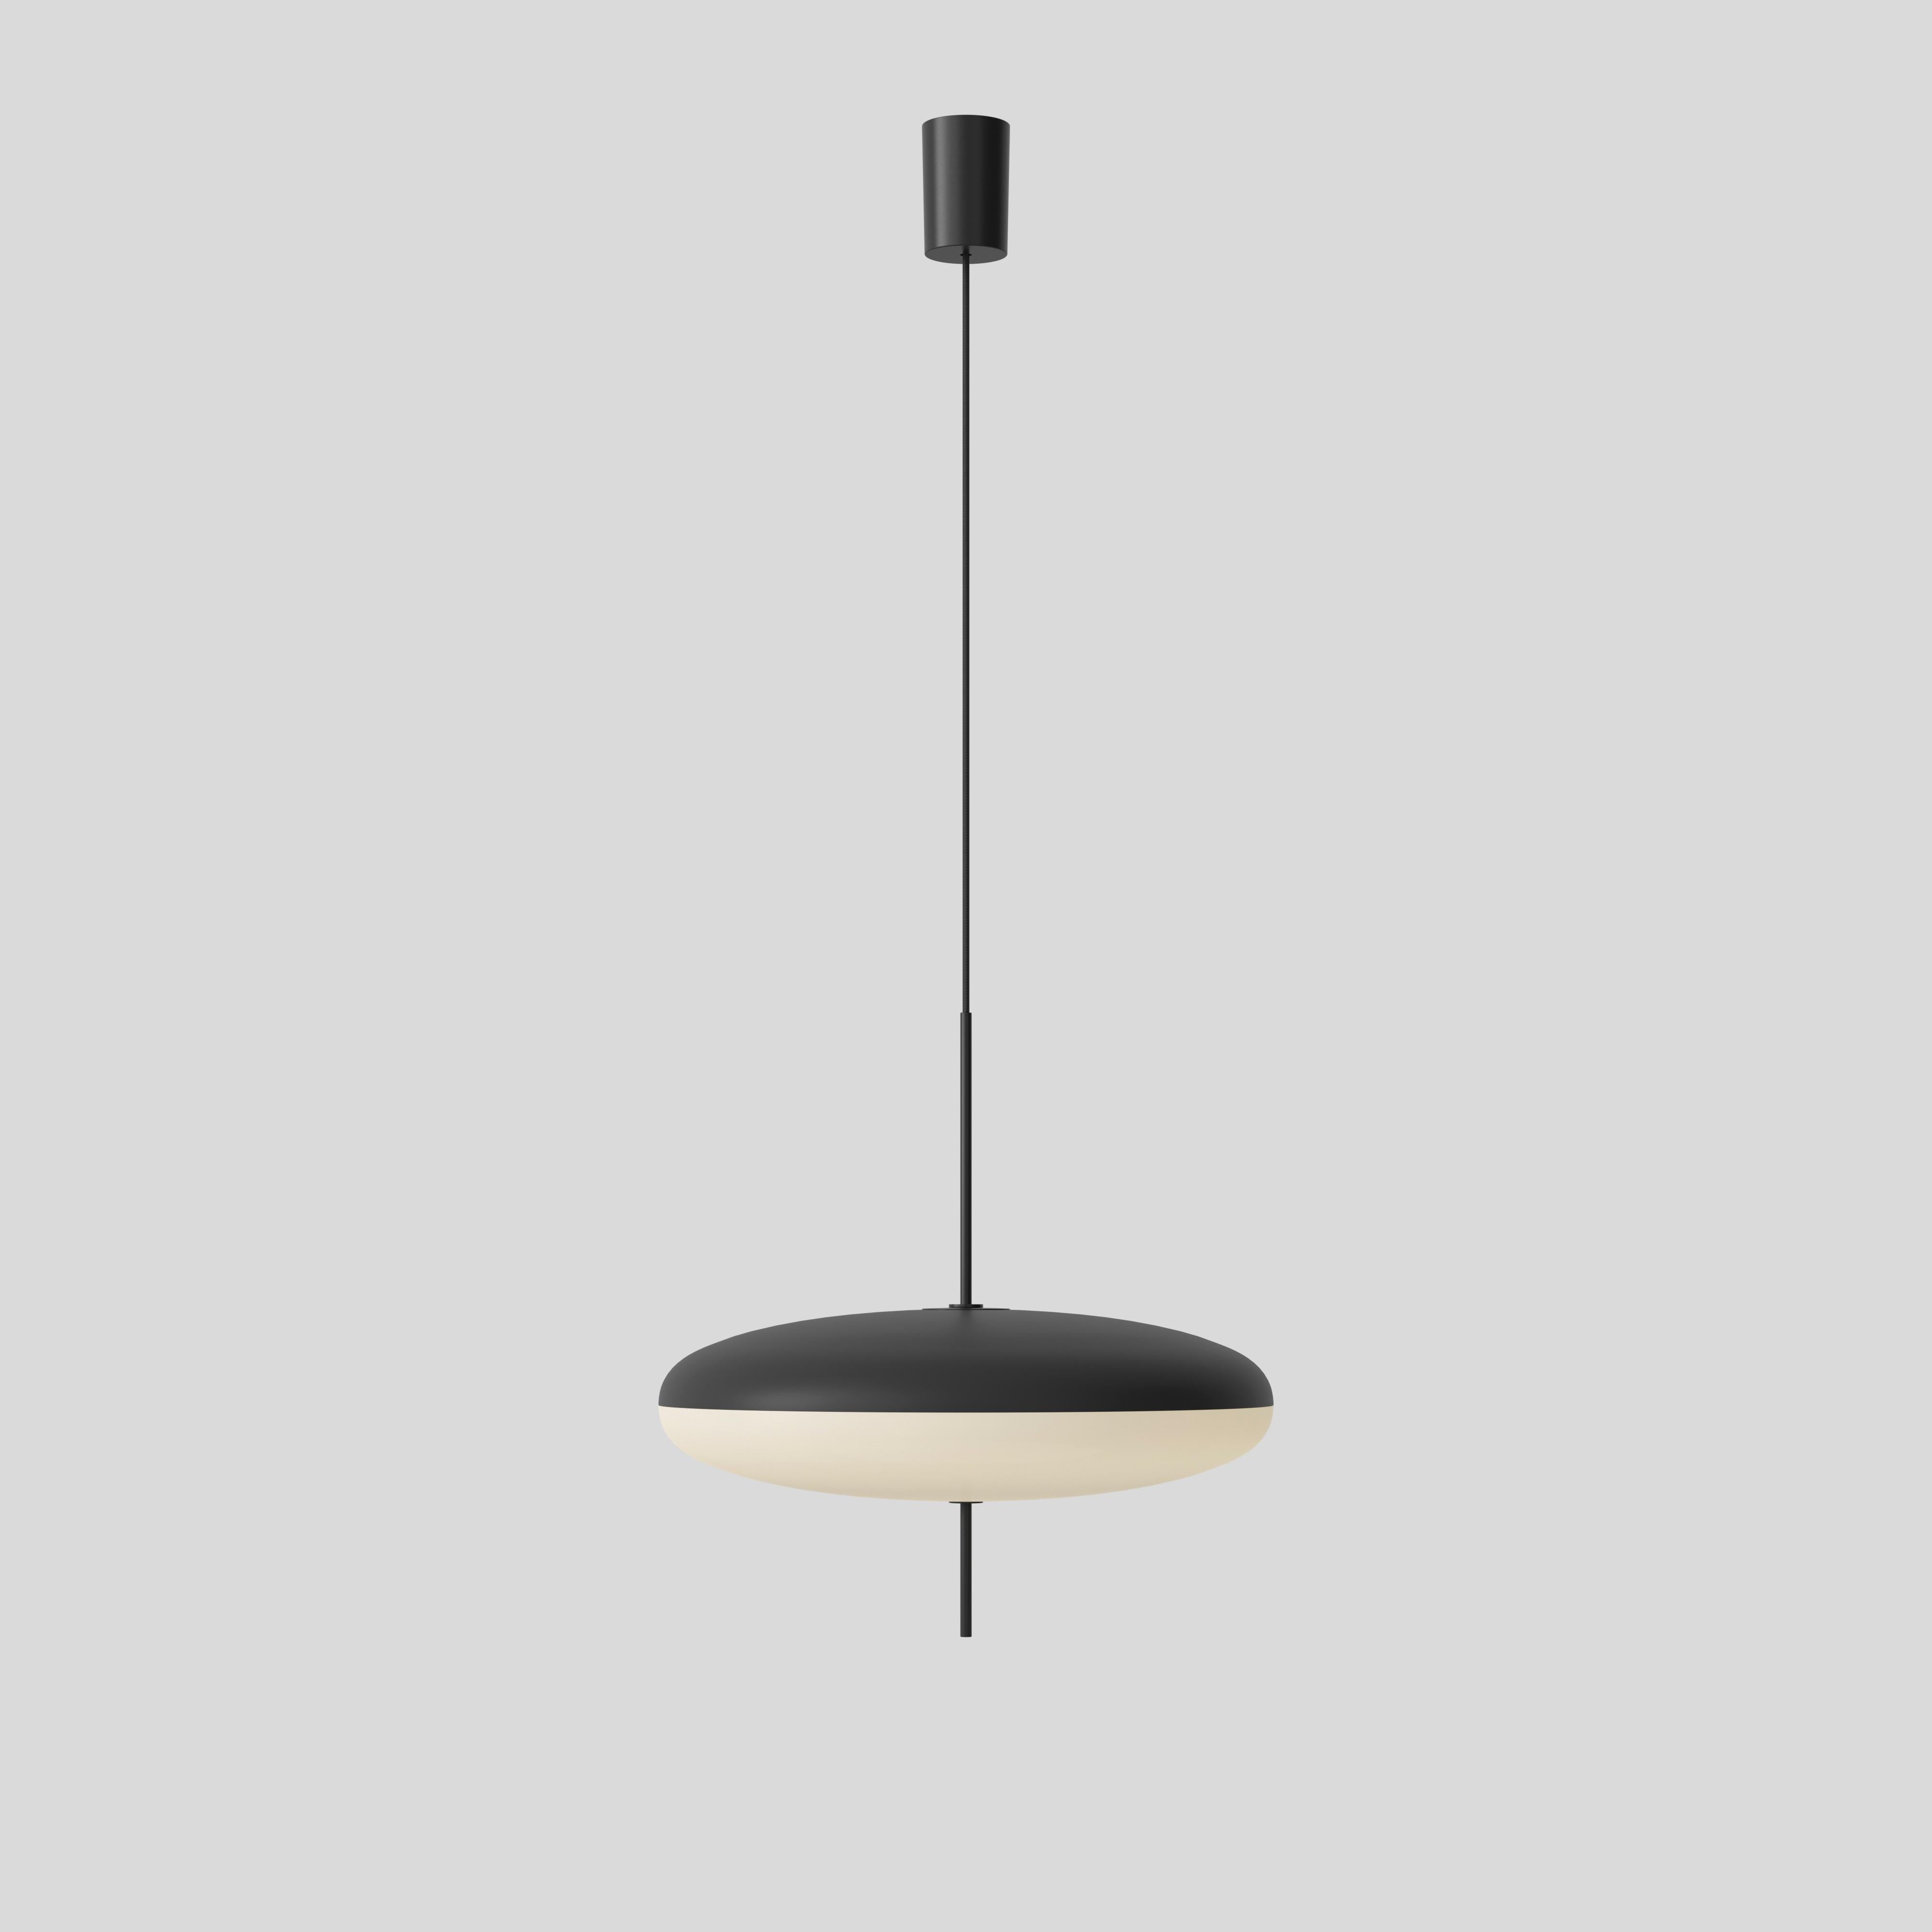 Gino Sarfatti-Lampe, Modell 2065, schwarz-weißer Diffusor, schwarze Hardware 1